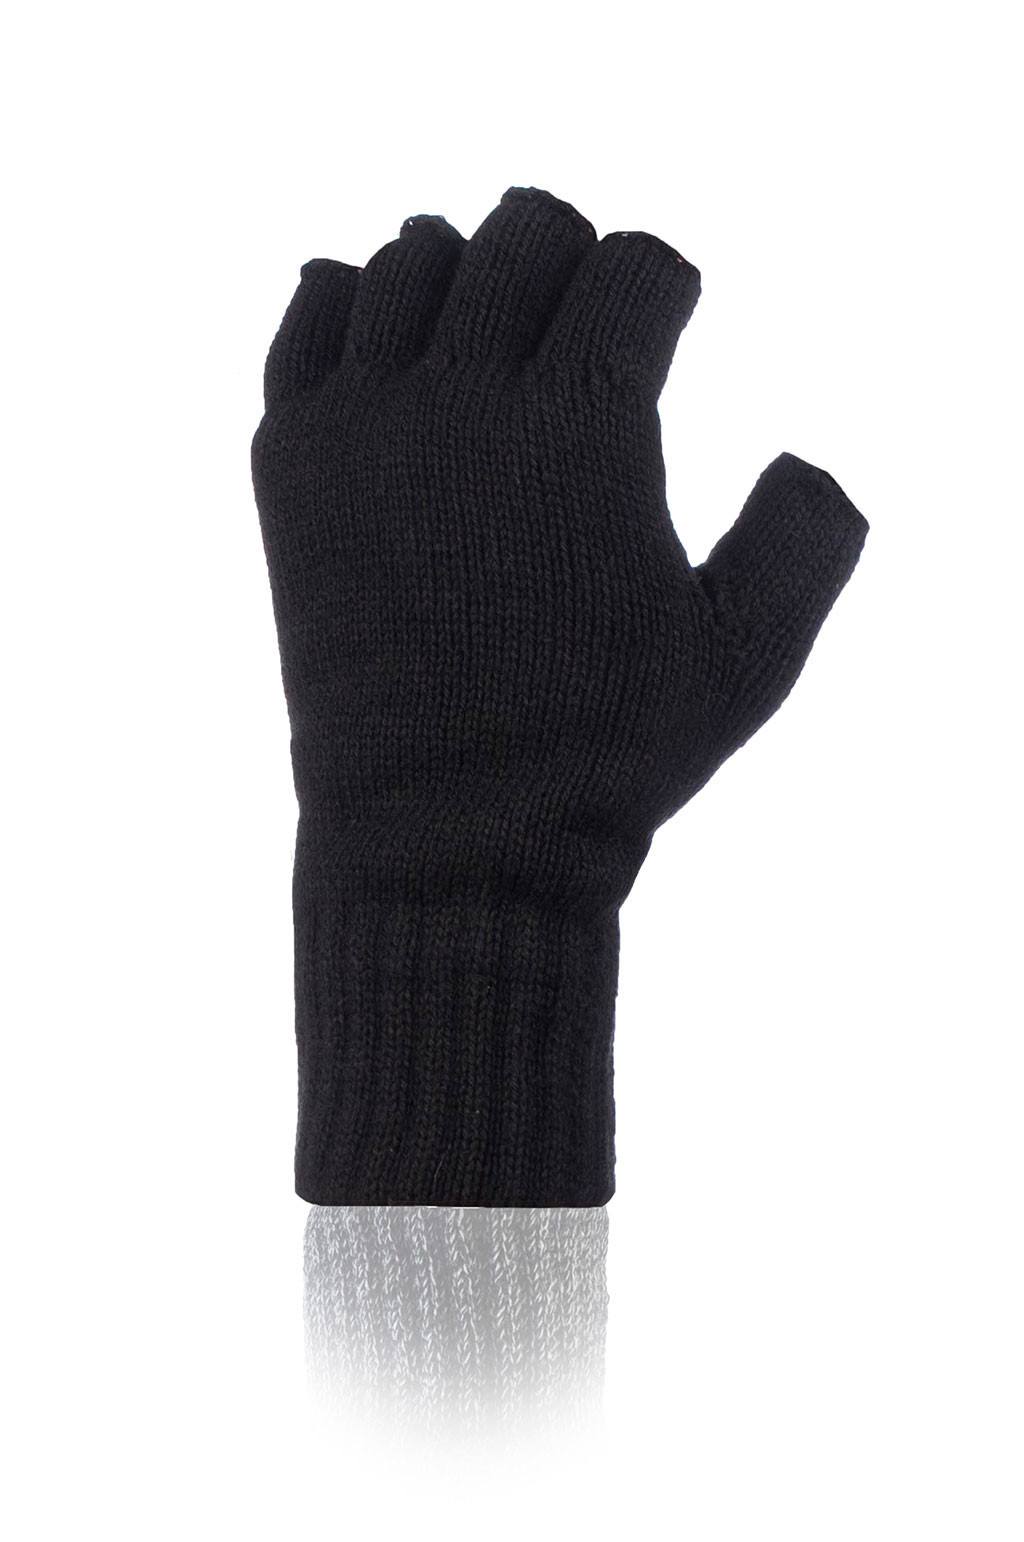 Men's Fingerless Gloves Navy / One Size